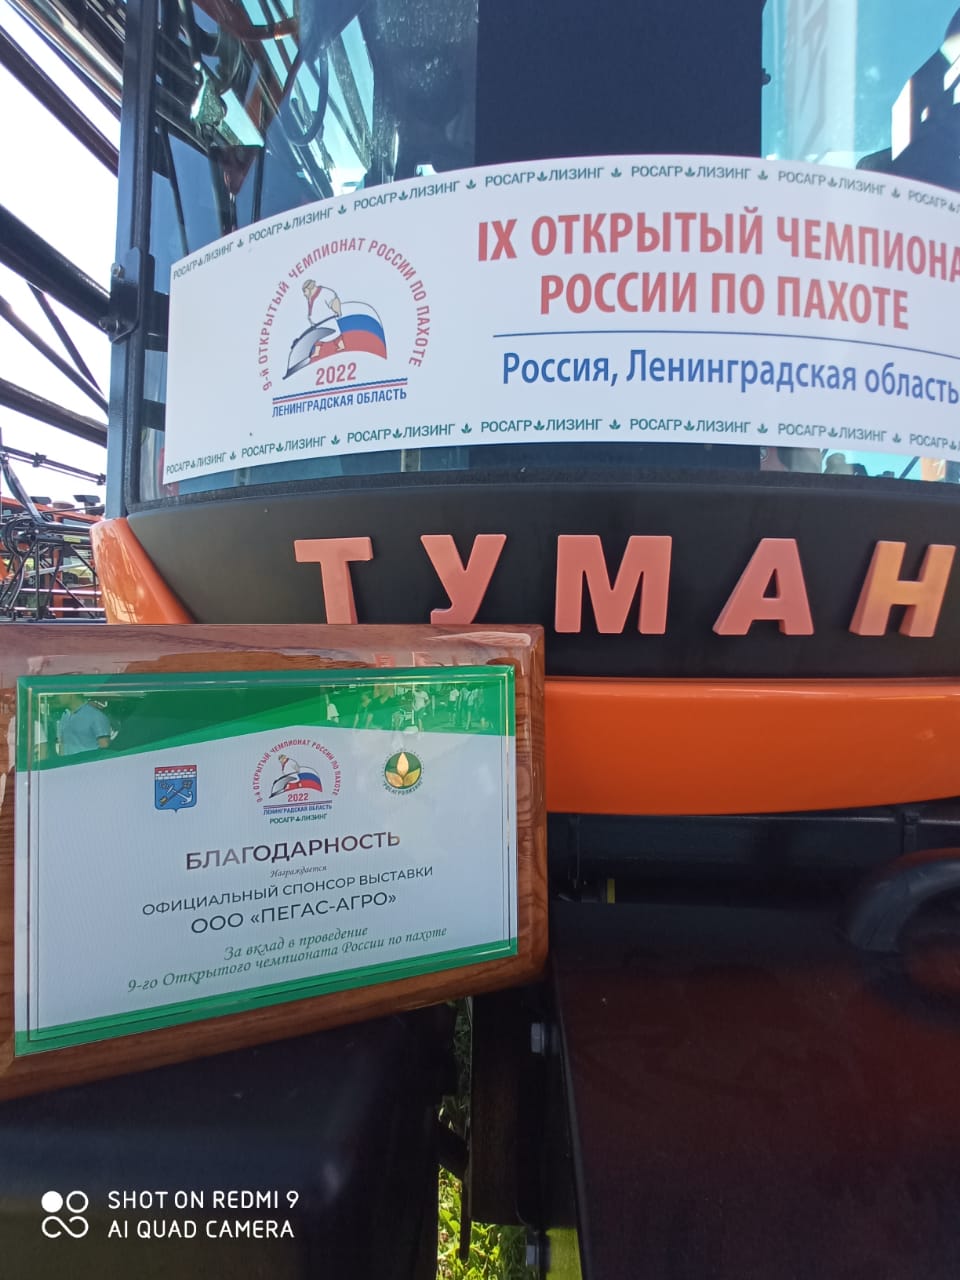 Чемпионат России по пахоте: Туманы приняли участие в экспозиции